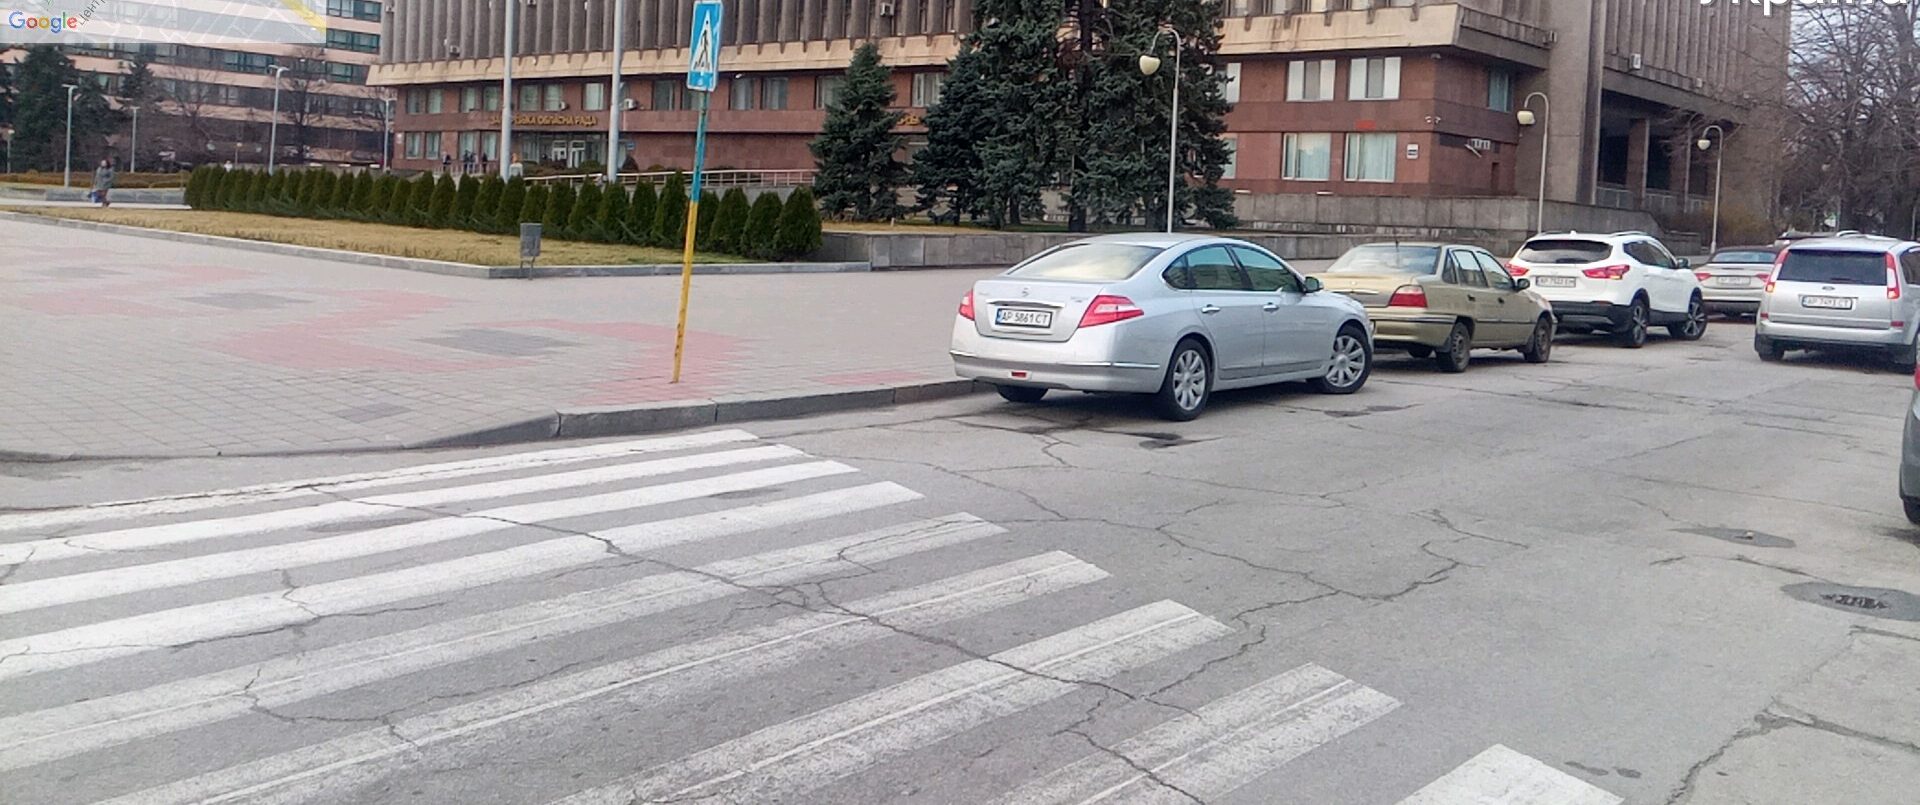 Проблему парковок в Запорожье будет решать специальная комиссия